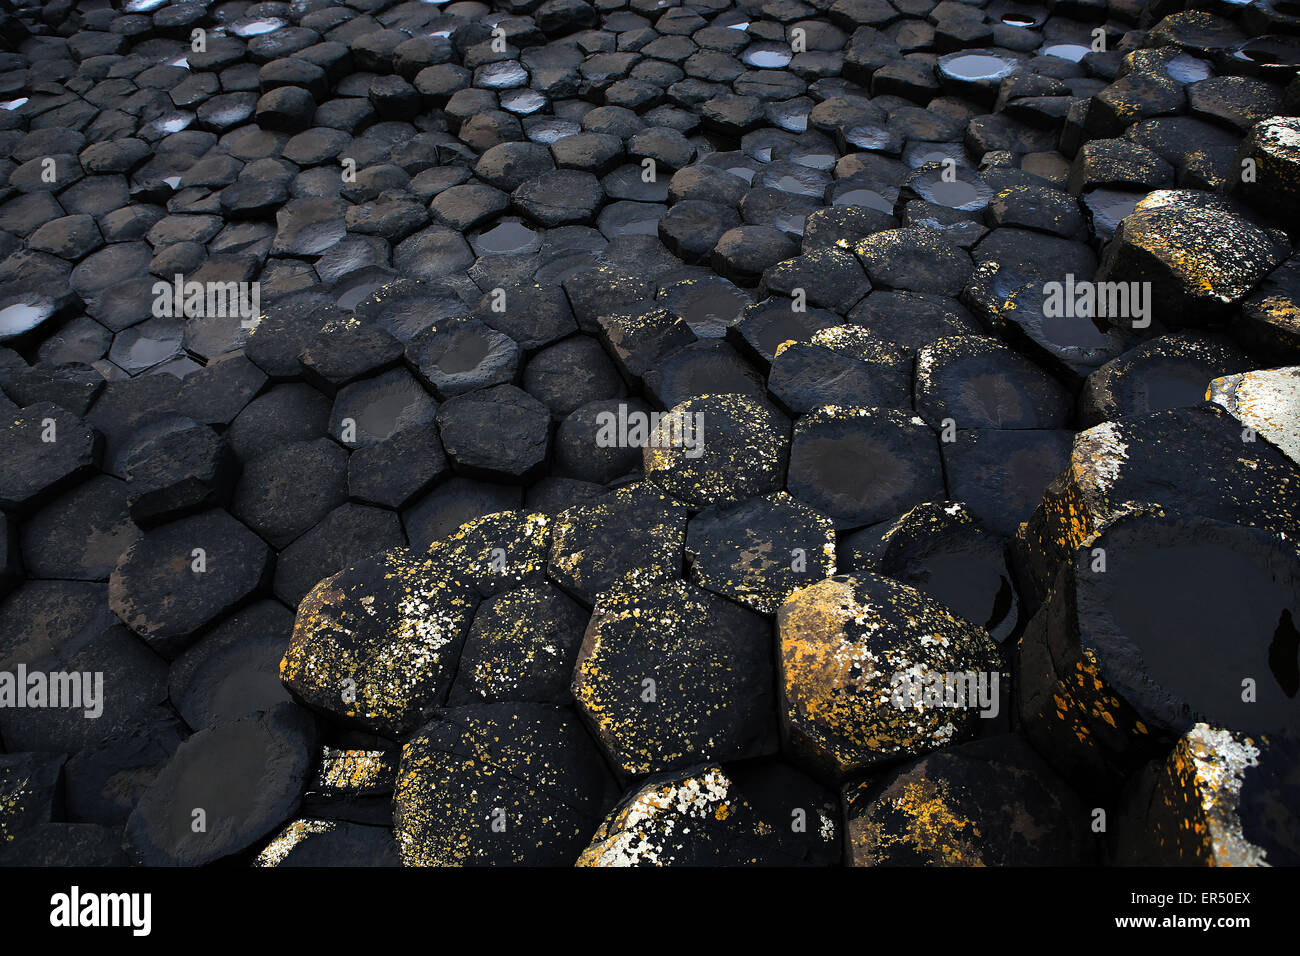 Giant's Causeway.El Condado de Antrim.Irlanda del Norte.UK.europa.típico de basalto columnar hexagonal Foto de stock